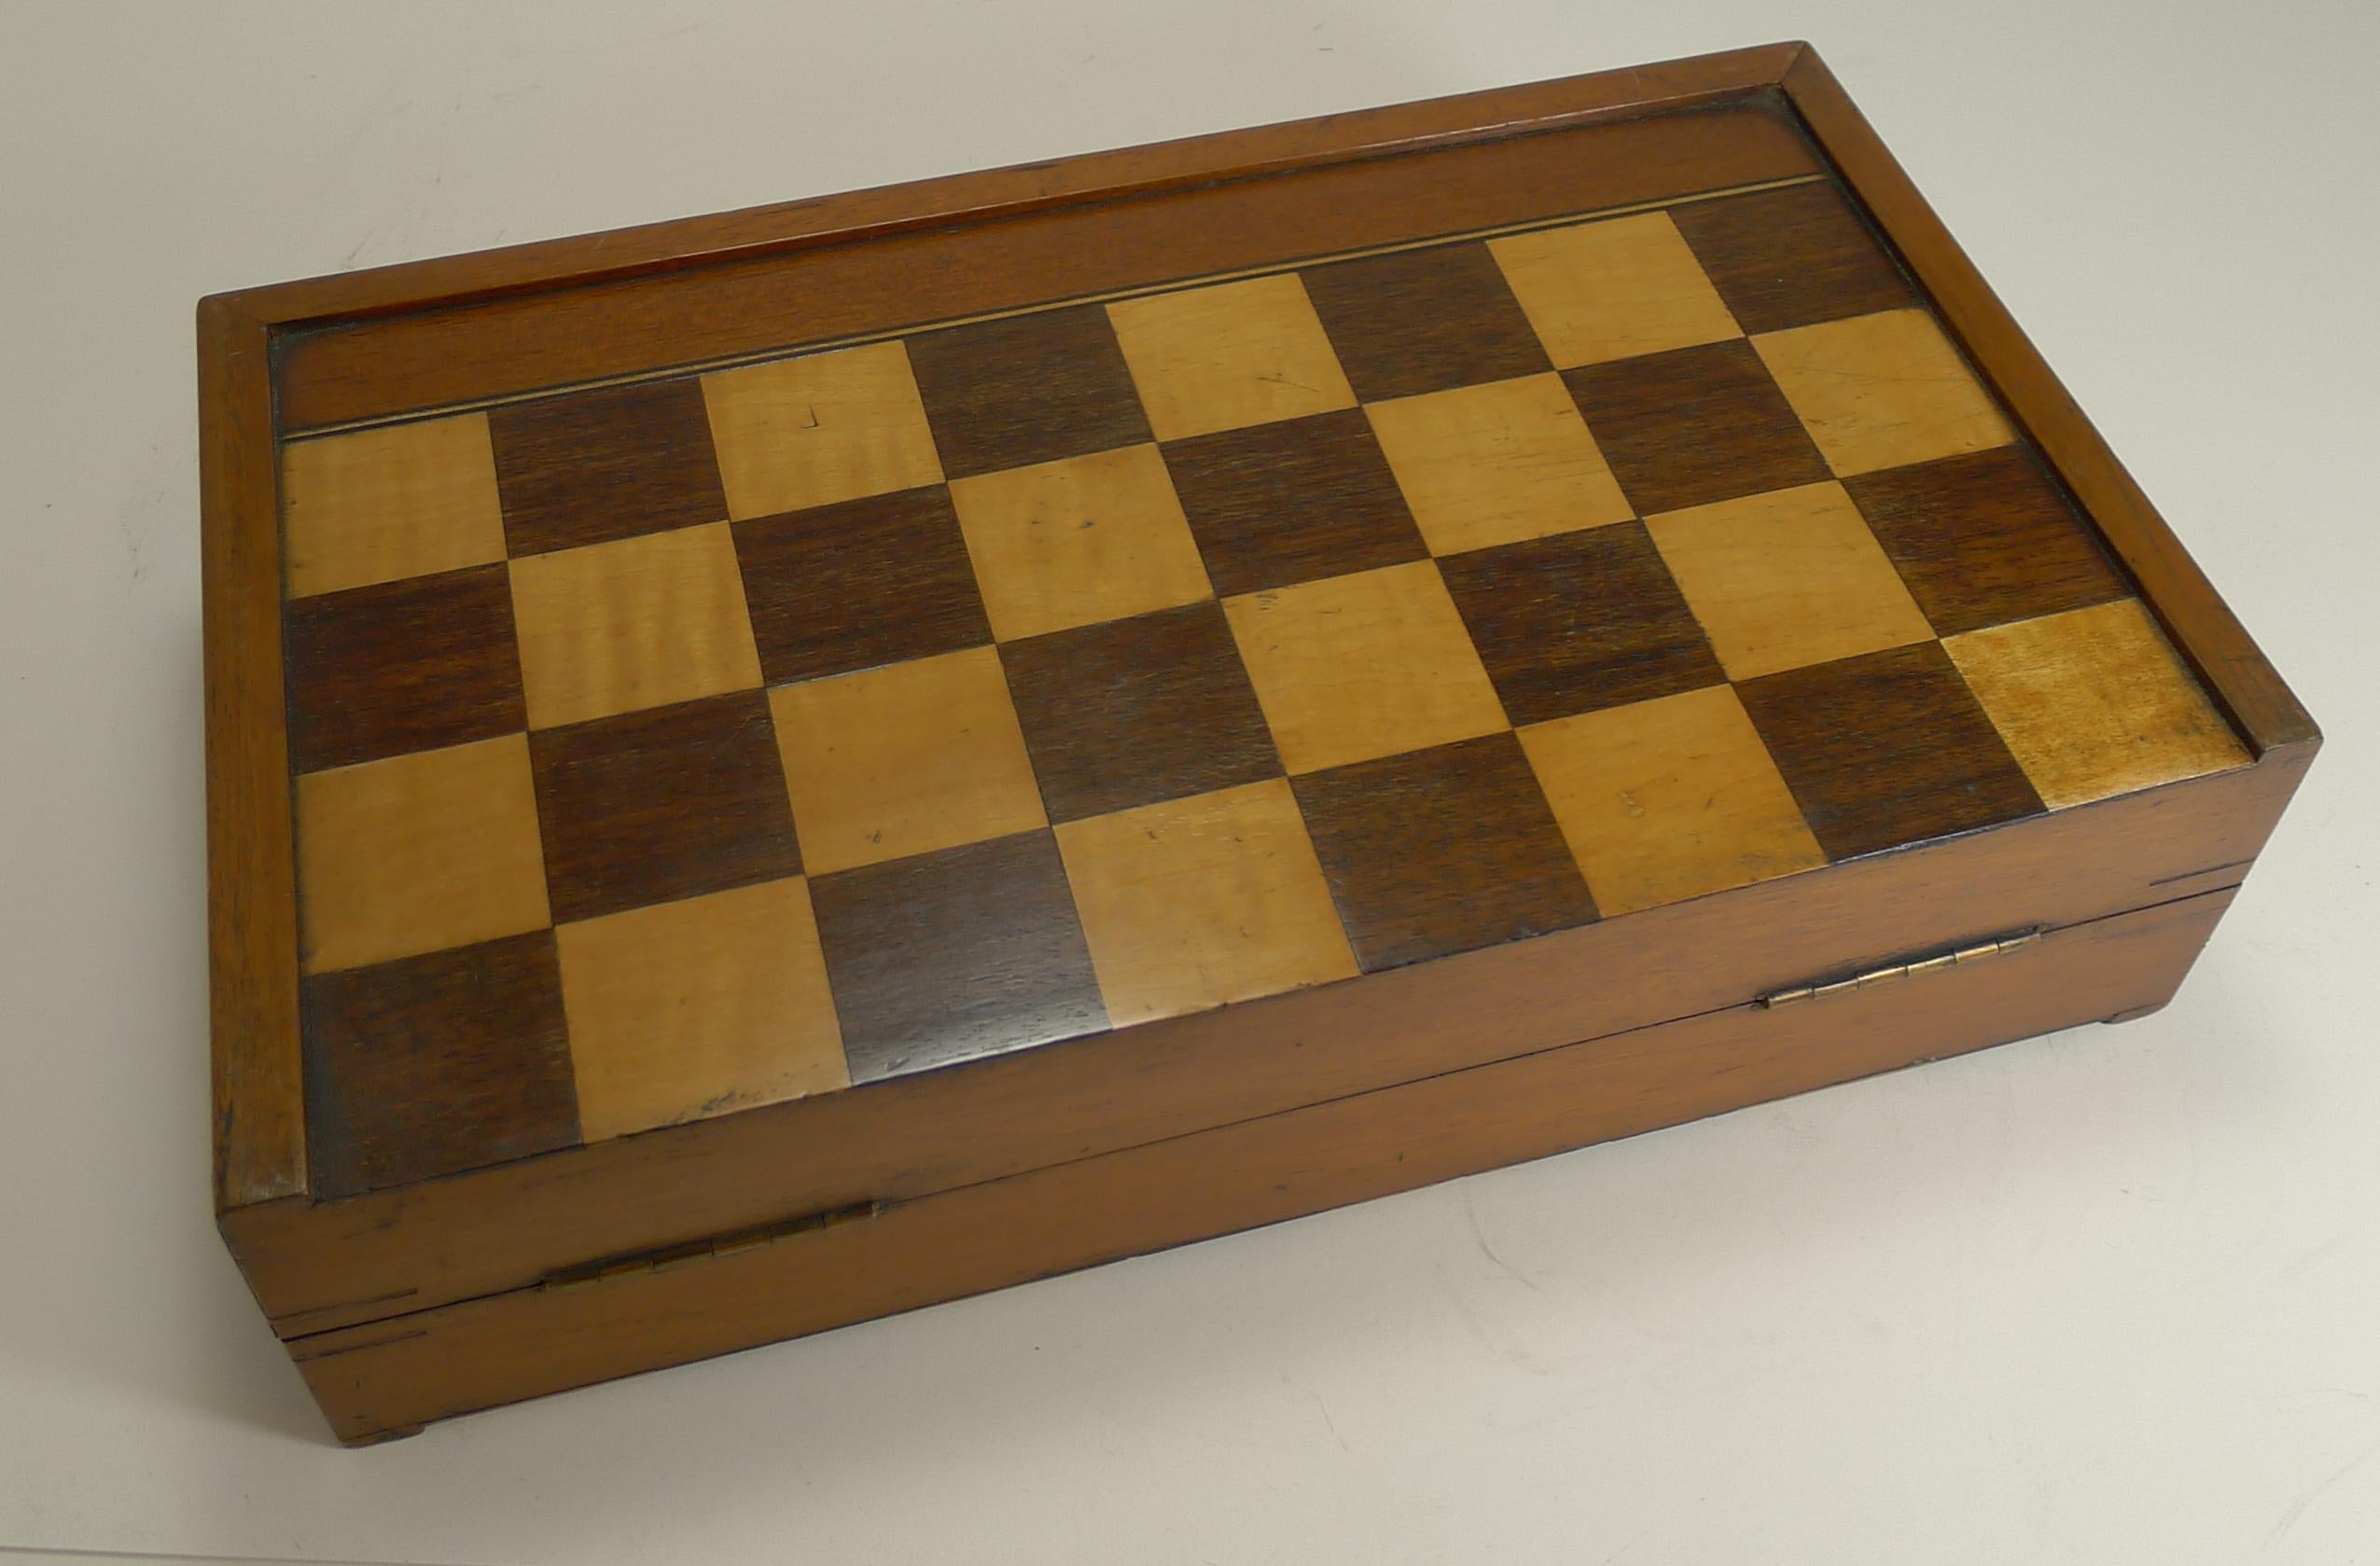 Late 19th Century Antique English Folding Chess / Backgammon / Checkers Board, circa 1890-1900